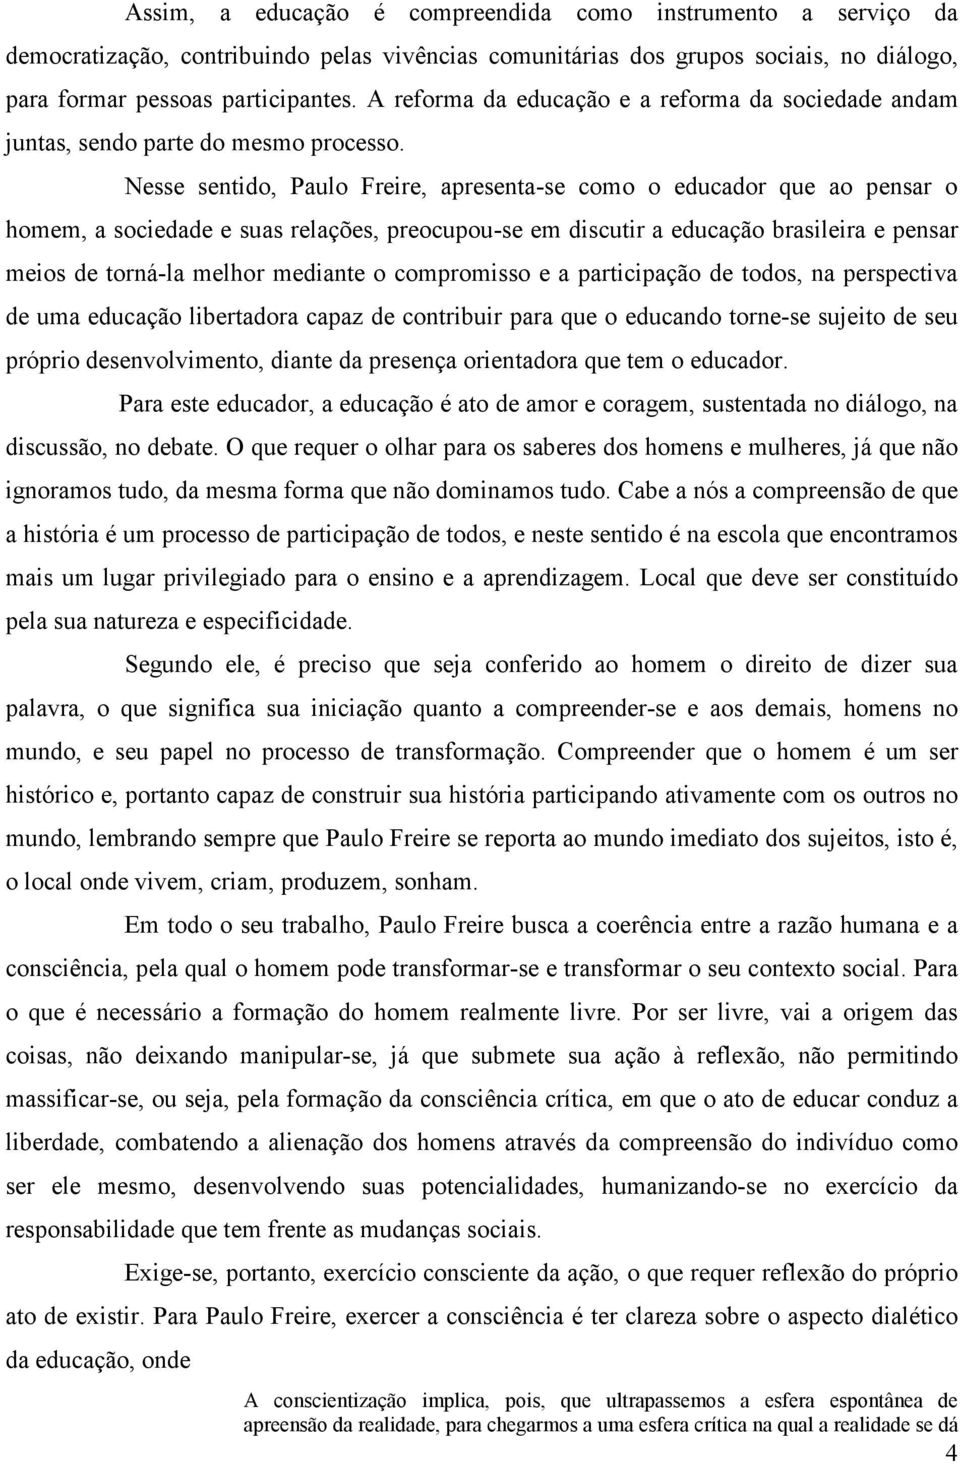 Nesse sentido, Paulo Freire, apresenta-se como o educador que ao pensar o homem, a sociedade e suas relações, preocupou-se em discutir a educação brasileira e pensar meios de torná-la melhor mediante